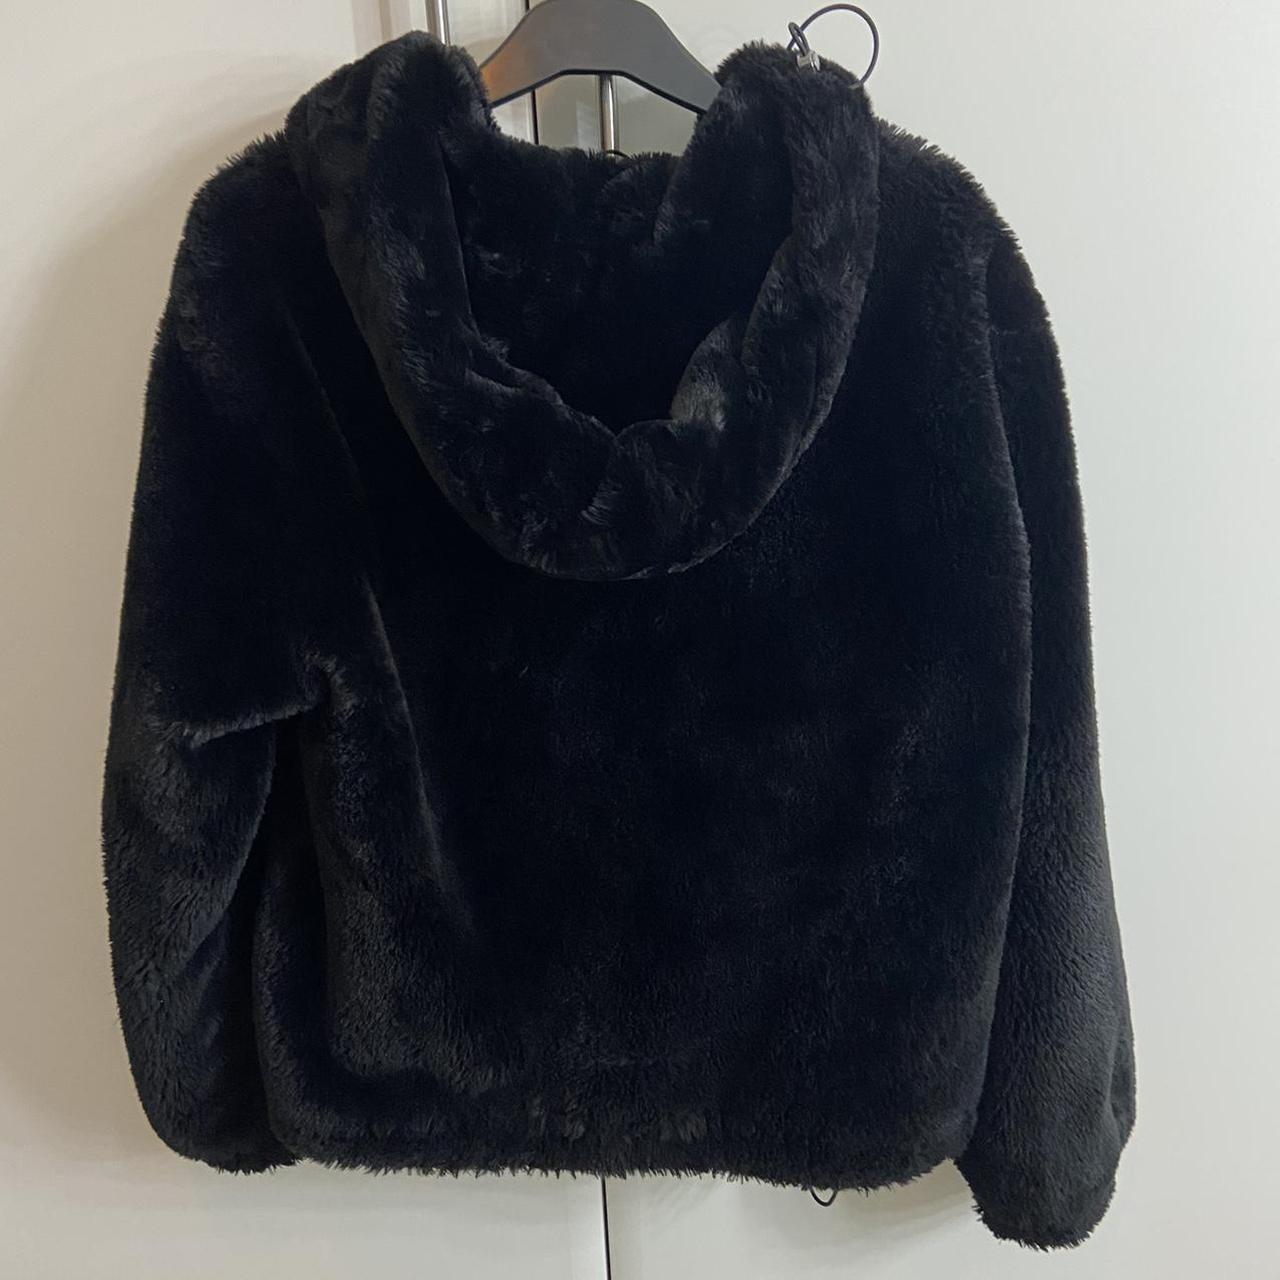 Bershka faux fur black coat jacket with hood free... - Depop